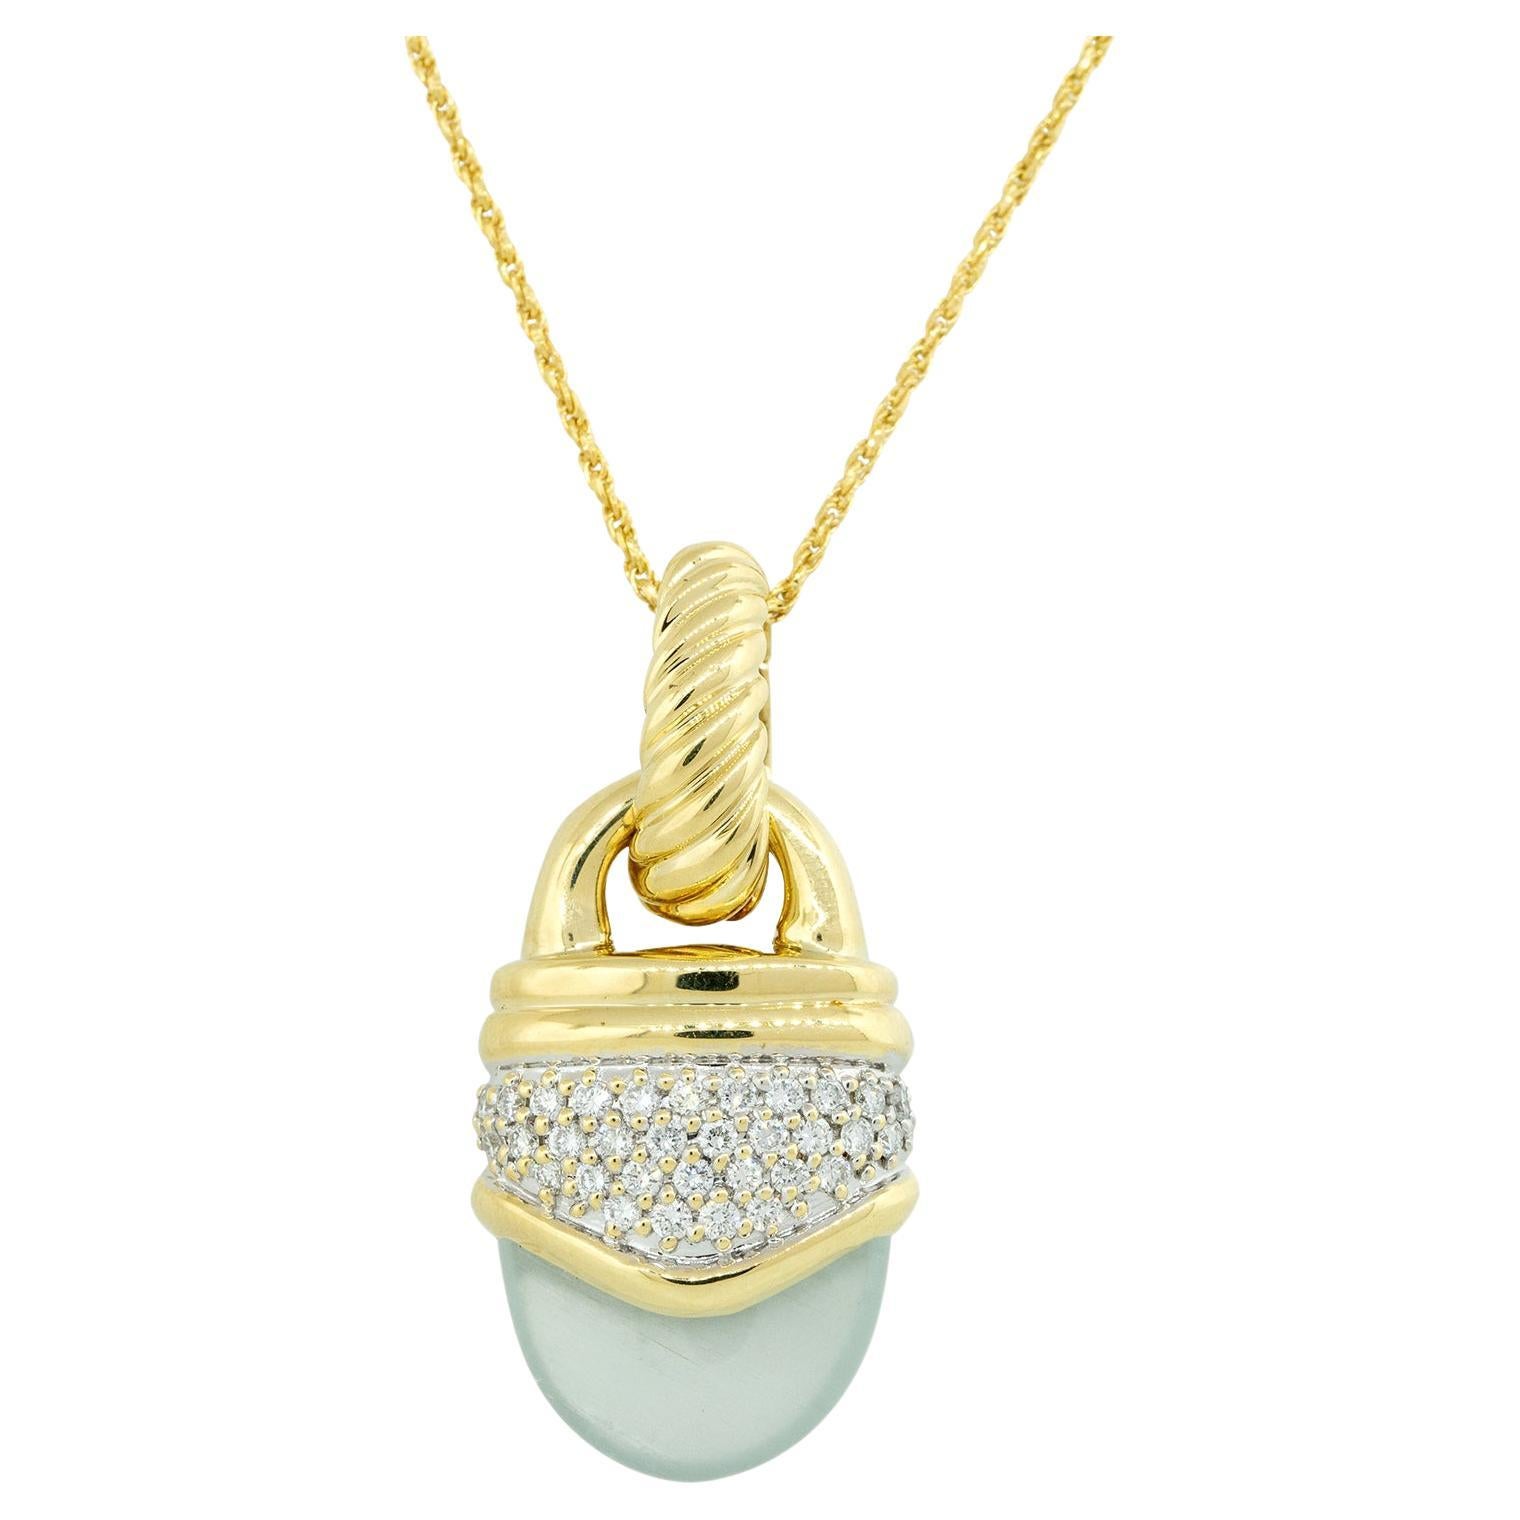 David Yurman 0.45 Carat Diamond & Chalcedony Pendant Necklace 18 Karat In Stock For Sale